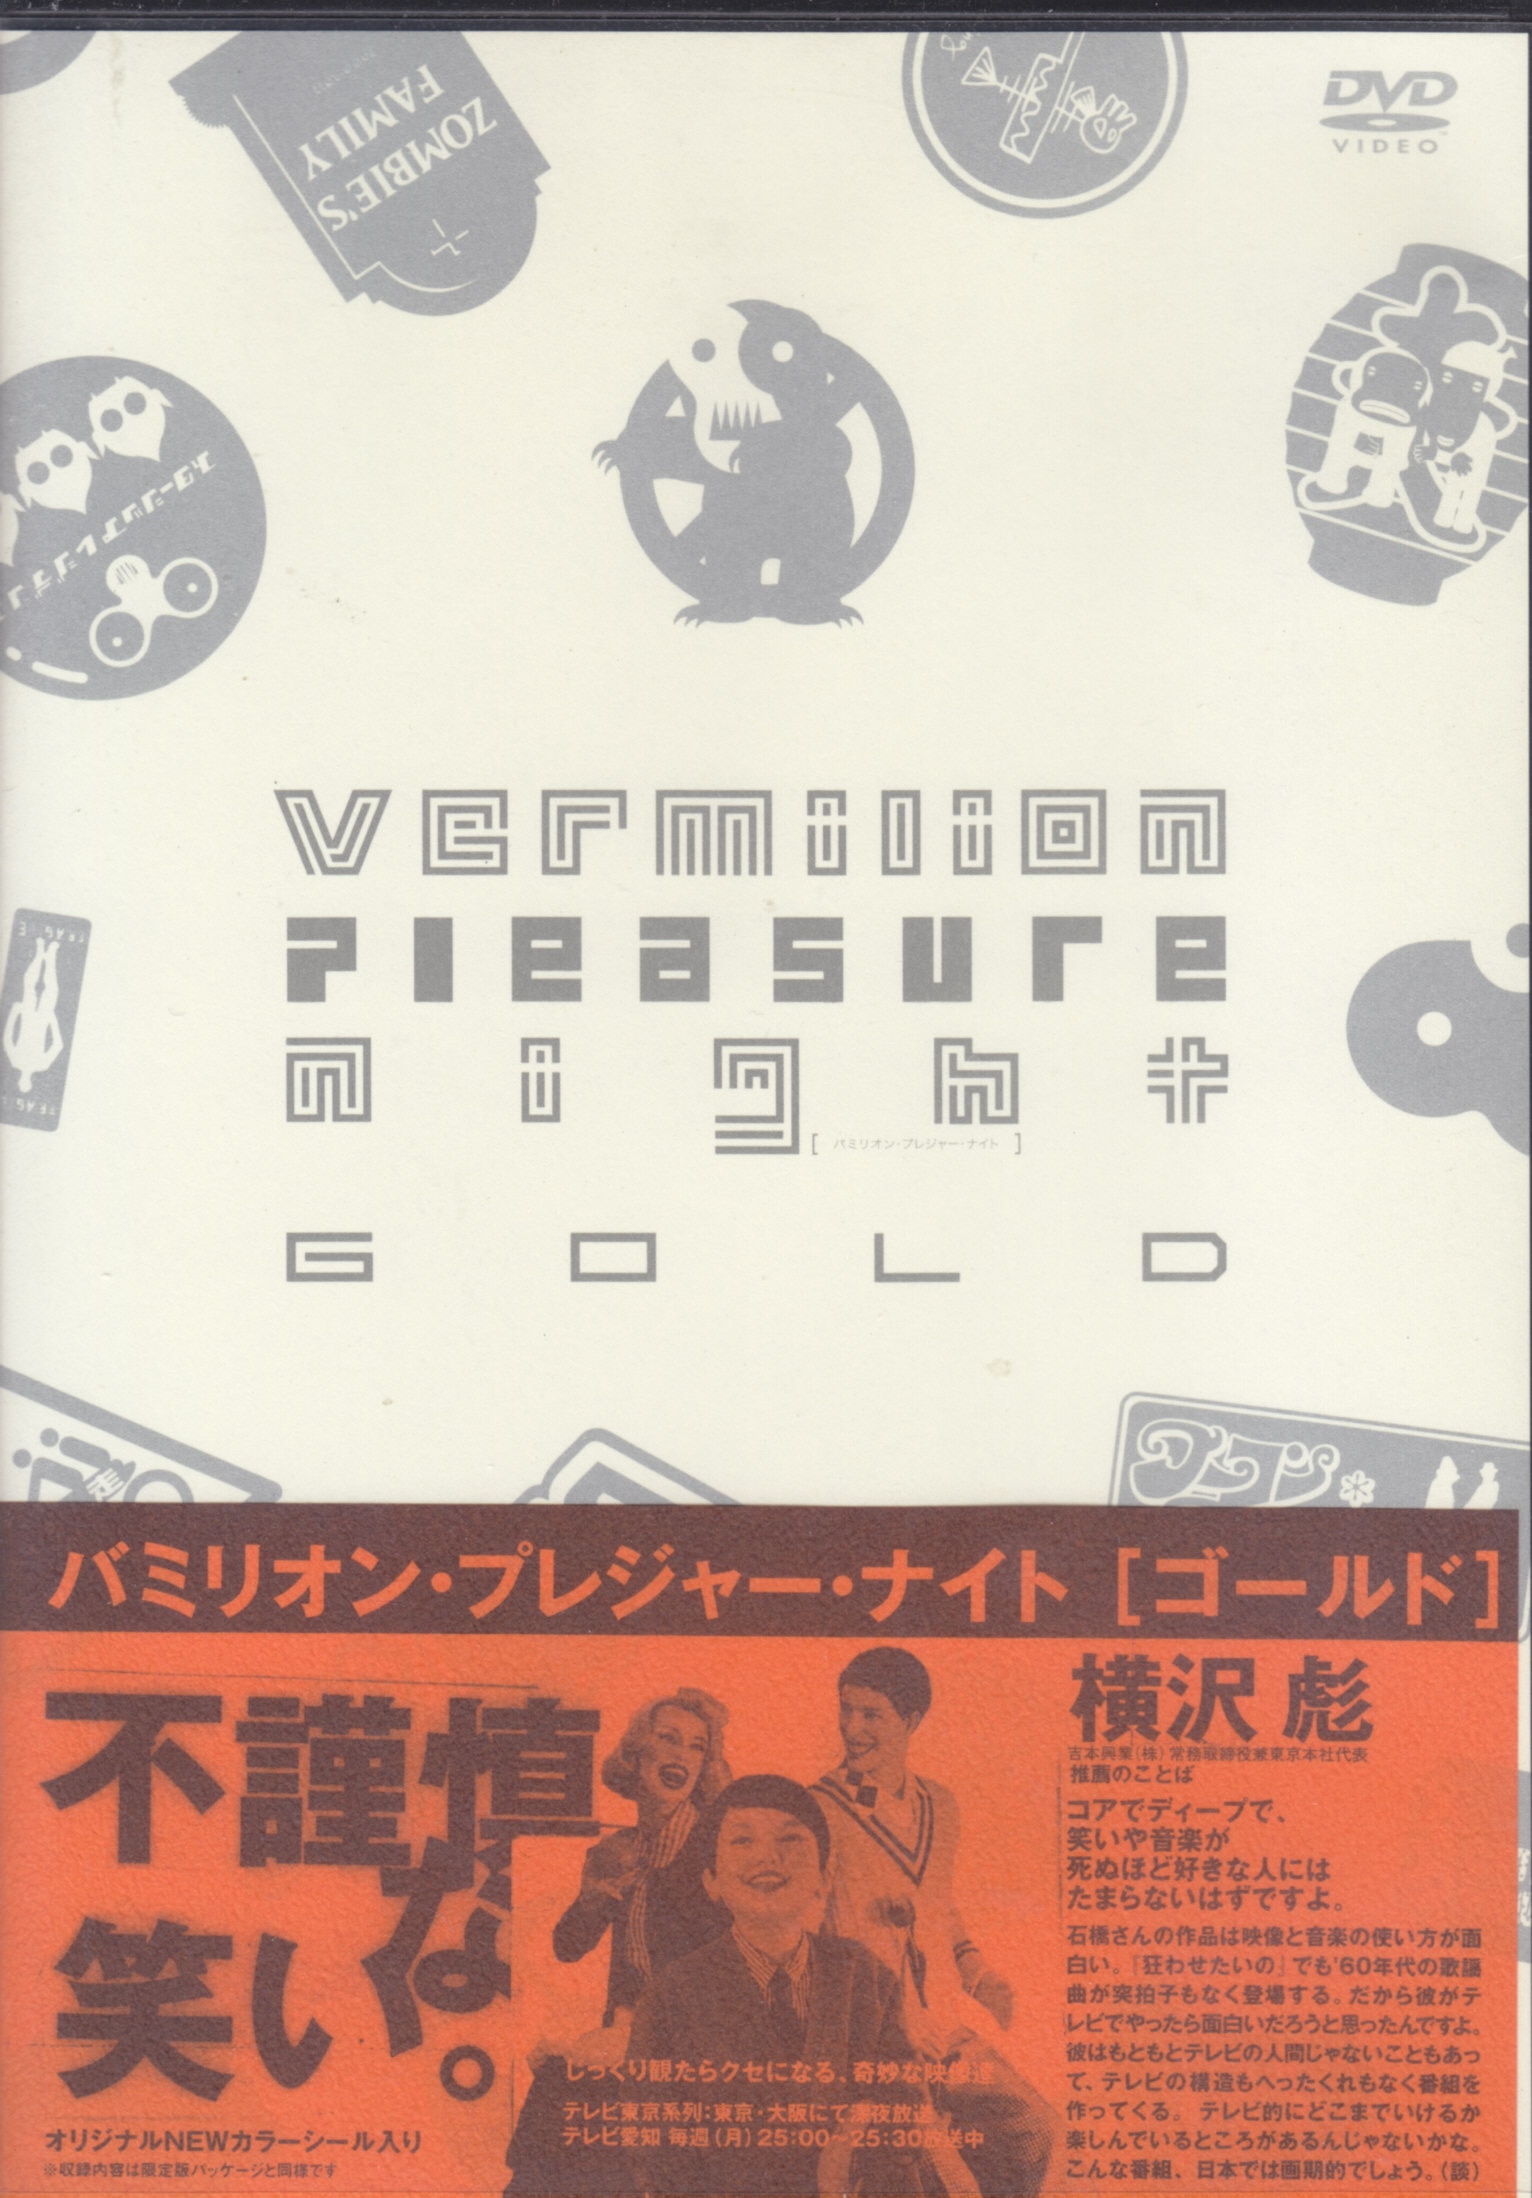 バミリオン・プレジャー・ナイト vol.1〜vol.5 5巻セット DVD 最大90 